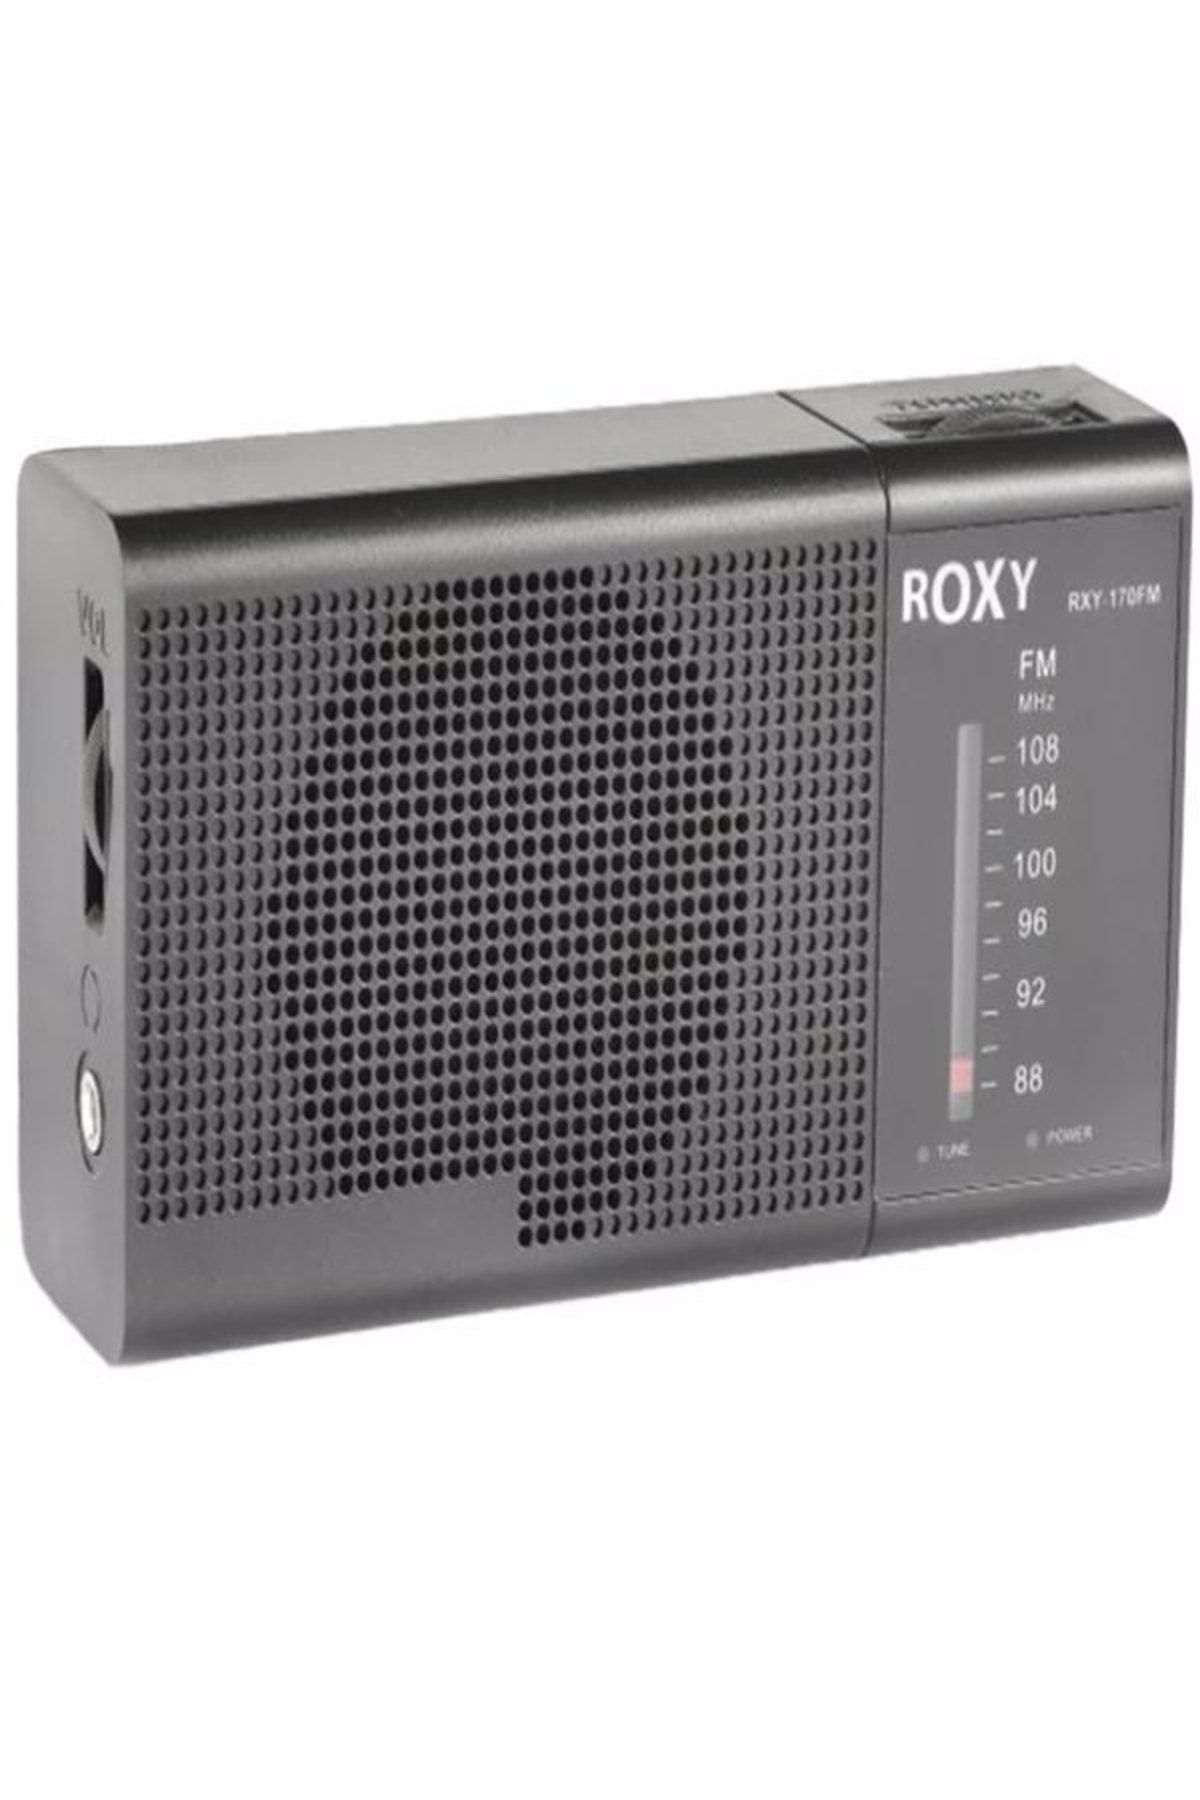 Roxy Pilli Cep Radyosu Fm Güçlü Çekim Kaliteli Kulaklık Girişi Olan El Tipi Deprem Çantası Radyosu